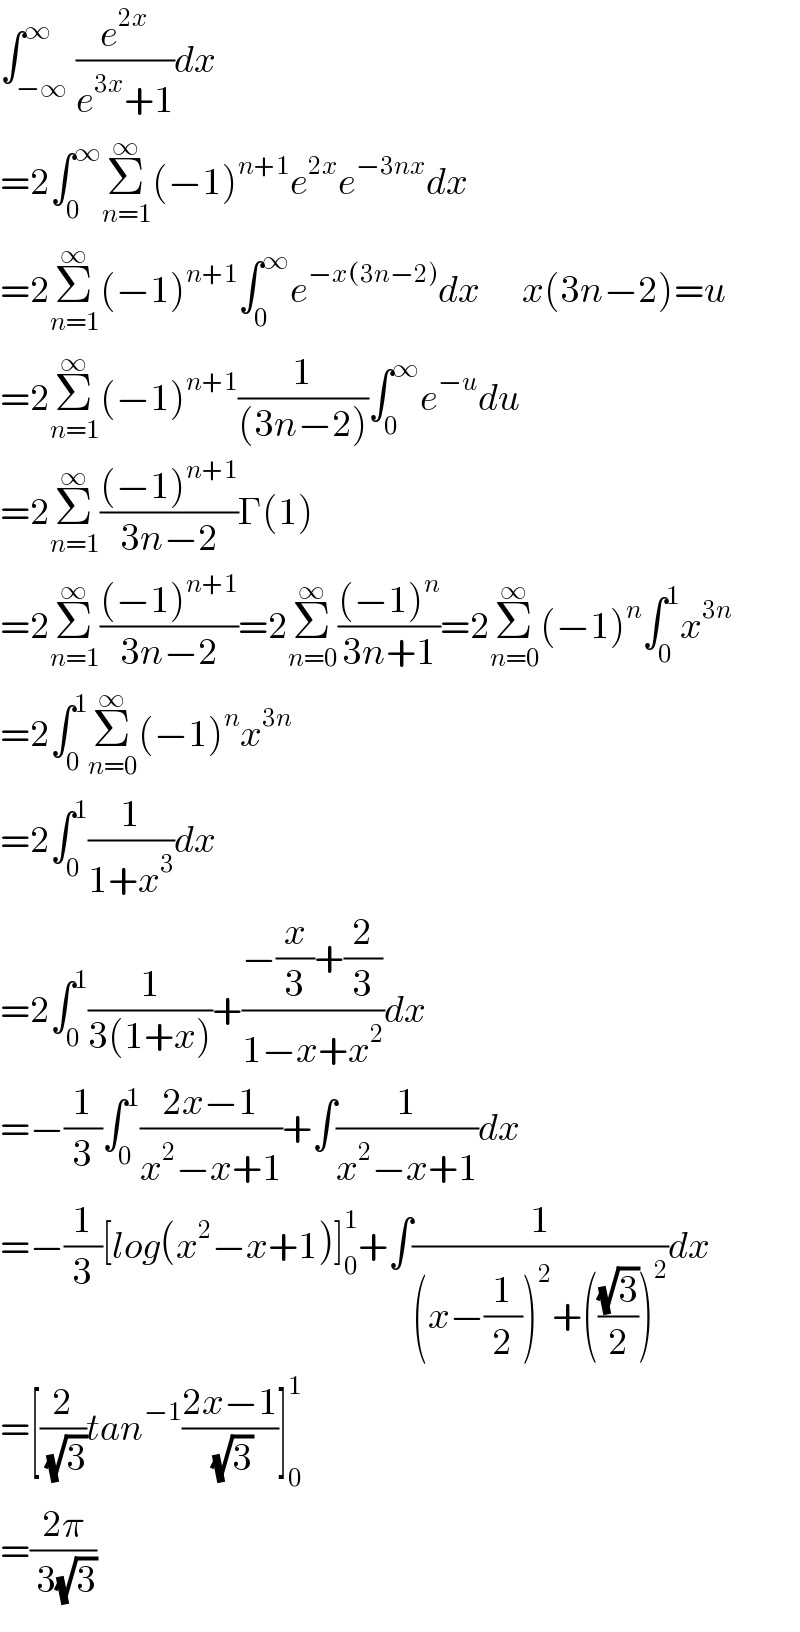 ∫_(−∞) ^∞ (e^(2x) /(e^(3x) +1))dx  =2∫_0 ^∞ Σ_(n=1) ^∞ (−1)^(n+1) e^(2x) e^(−3nx) dx  =2Σ_(n=1) ^∞ (−1)^(n+1) ∫_0 ^∞ e^(−x(3n−2)) dx       x(3n−2)=u  =2Σ_(n=1) ^∞ (−1)^(n+1) (1/((3n−2)))∫_0 ^∞ e^(−u) du  =2Σ_(n=1) ^∞ (((−1)^(n+1) )/(3n−2))Γ(1)  =2Σ_(n=1) ^∞ (((−1)^(n+1) )/(3n−2))=2Σ_(n=0) ^∞ (((−1)^n )/(3n+1))=2Σ_(n=0) ^∞ (−1)^n ∫_0 ^1 x^(3n)   =2∫_0 ^1 Σ_(n=0) ^∞ (−1)^n x^(3n)   =2∫_0 ^1 (1/(1+x^3 ))dx  =2∫_0 ^1 (1/(3(1+x)))+((−(x/3)+(2/3))/(1−x+x^2 ))dx      =−(1/3)∫_0 ^1 ((2x−1)/(x^2 −x+1))+∫(1/(x^2 −x+1))dx  =−(1/3)[log(x^2 −x+1)]_0 ^1 +∫(1/((x−(1/2))^2 +(((√3)/2))^2 ))dx  =[(2/( (√3)))tan^(−1) ((2x−1)/( (√3)))]_0 ^1   =((2π)/( 3(√3)))  